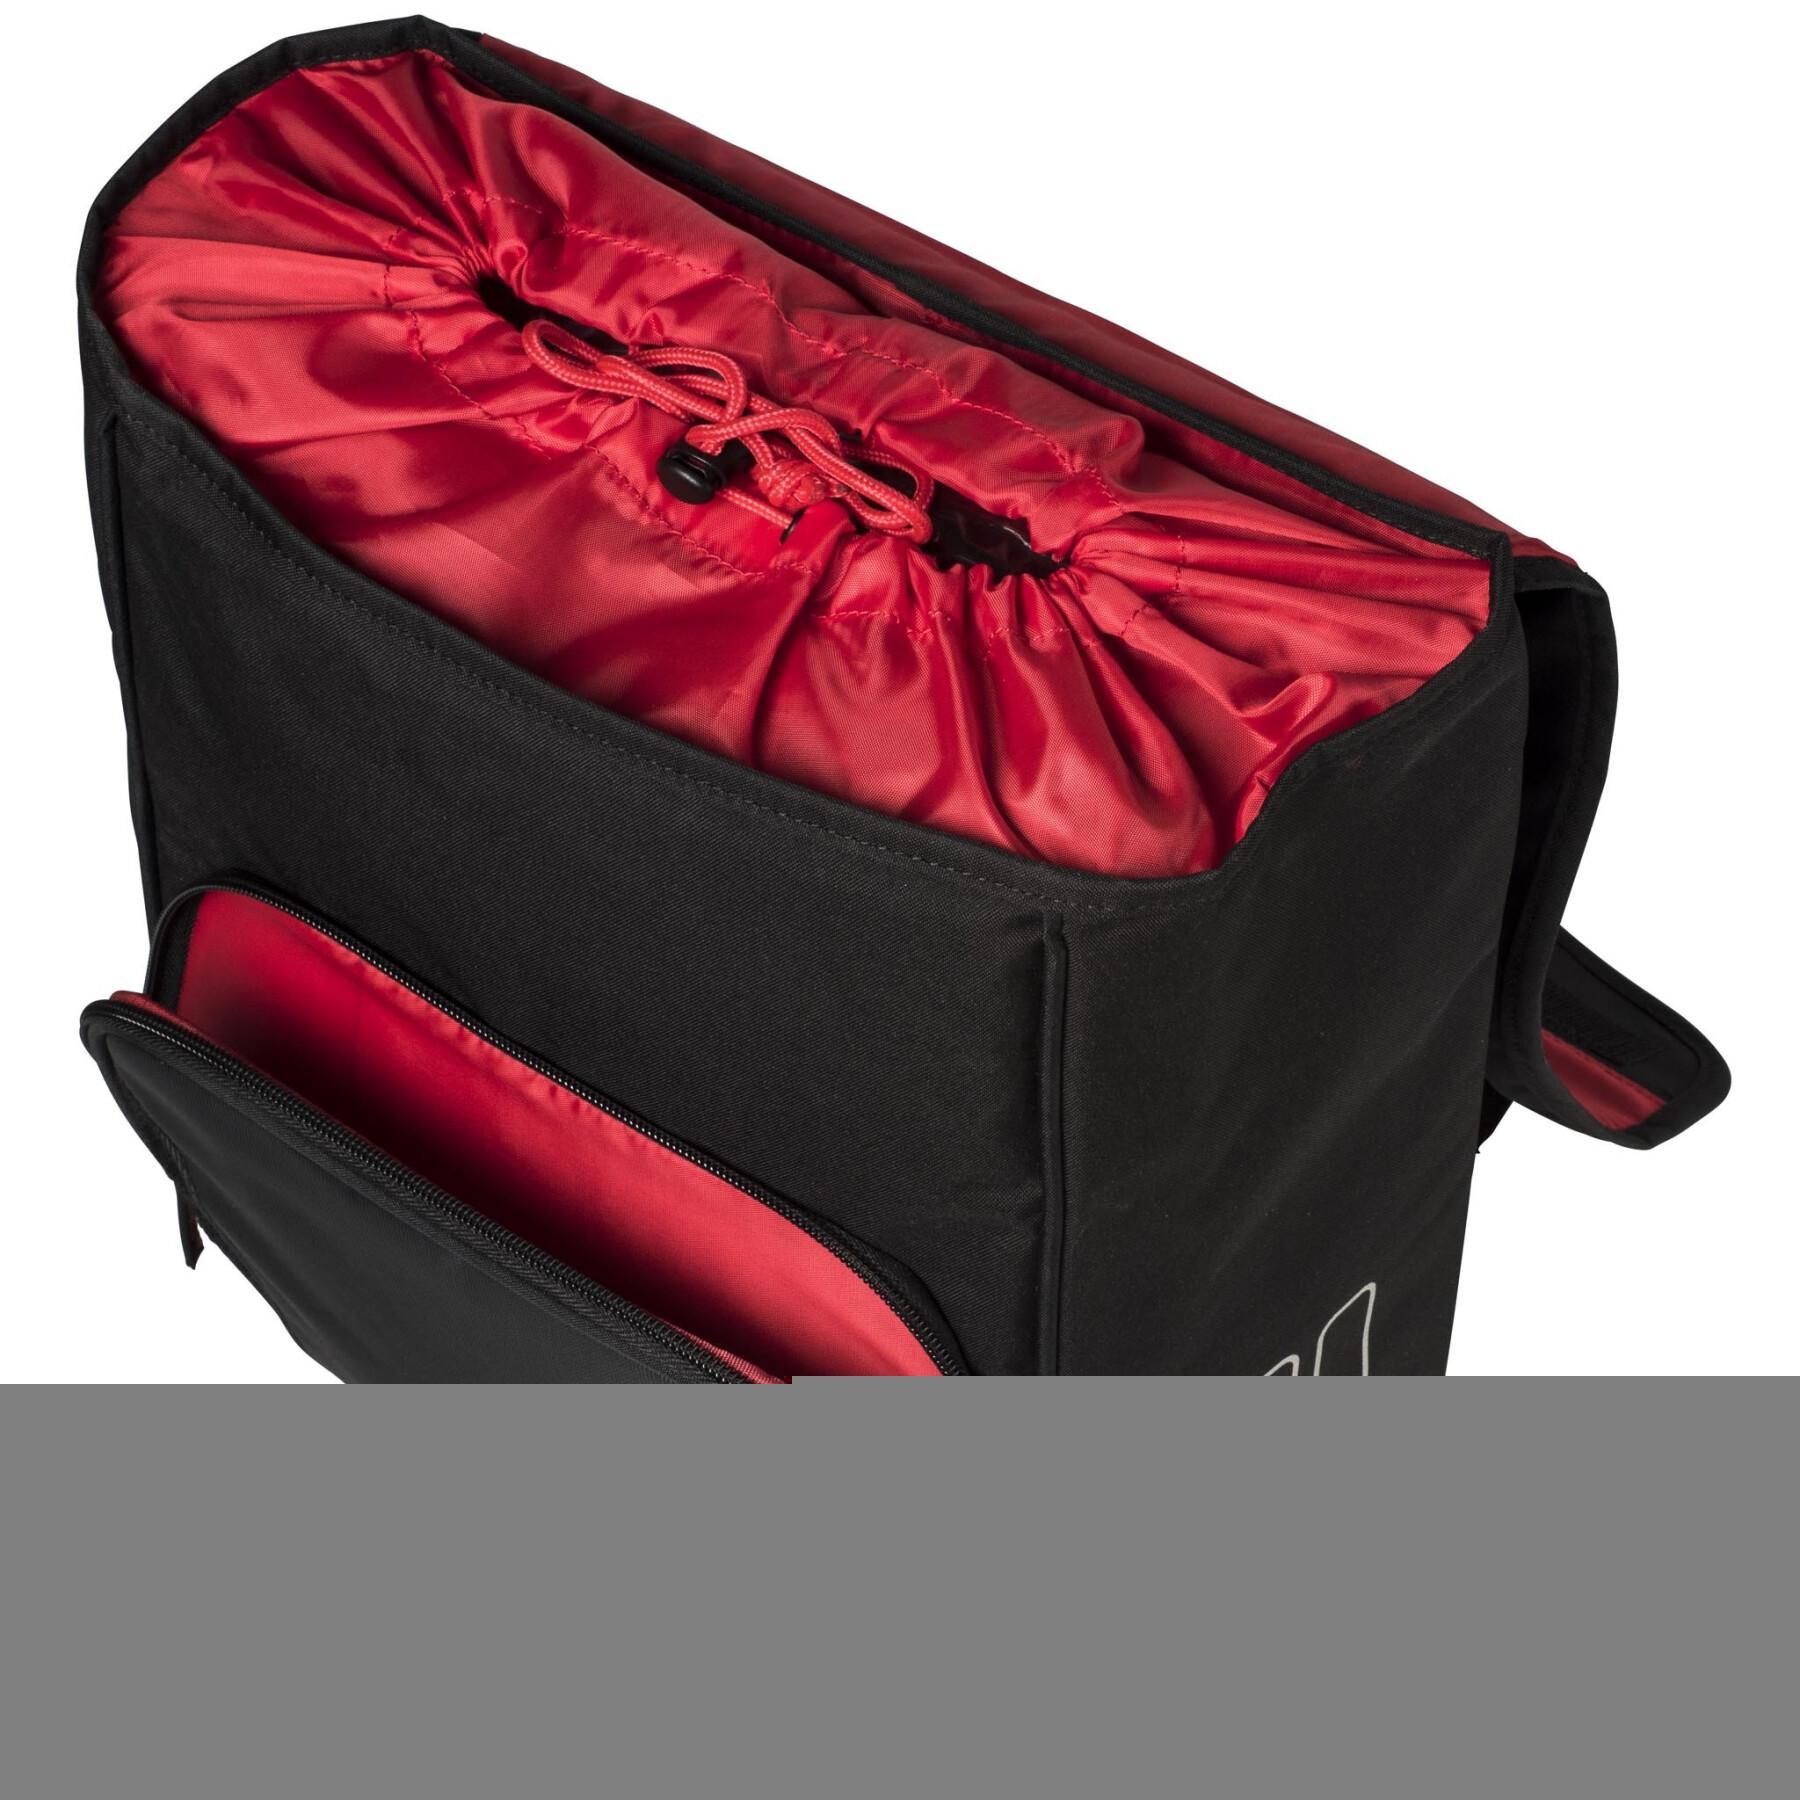 Waterproof backpack/shoulder bag Basil sport design commuter 18L